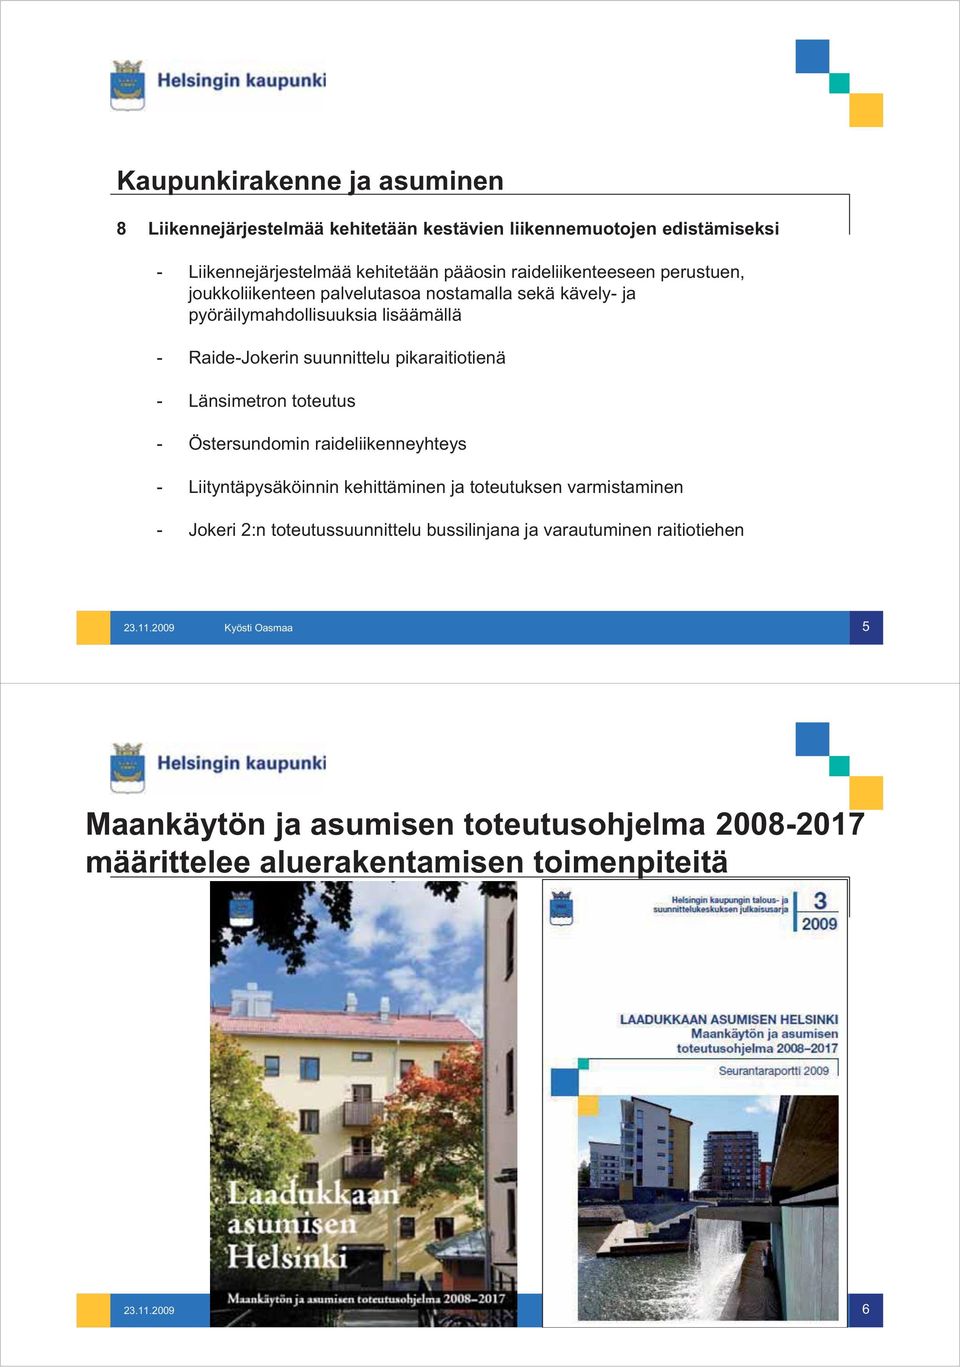 pikaraitiotienä - Länsimetron toteutus - Östersundomin raideliikenneyhteys - Liityntäpysäköinnin kehittäminen ja toteutuksen varmistaminen - Jokeri